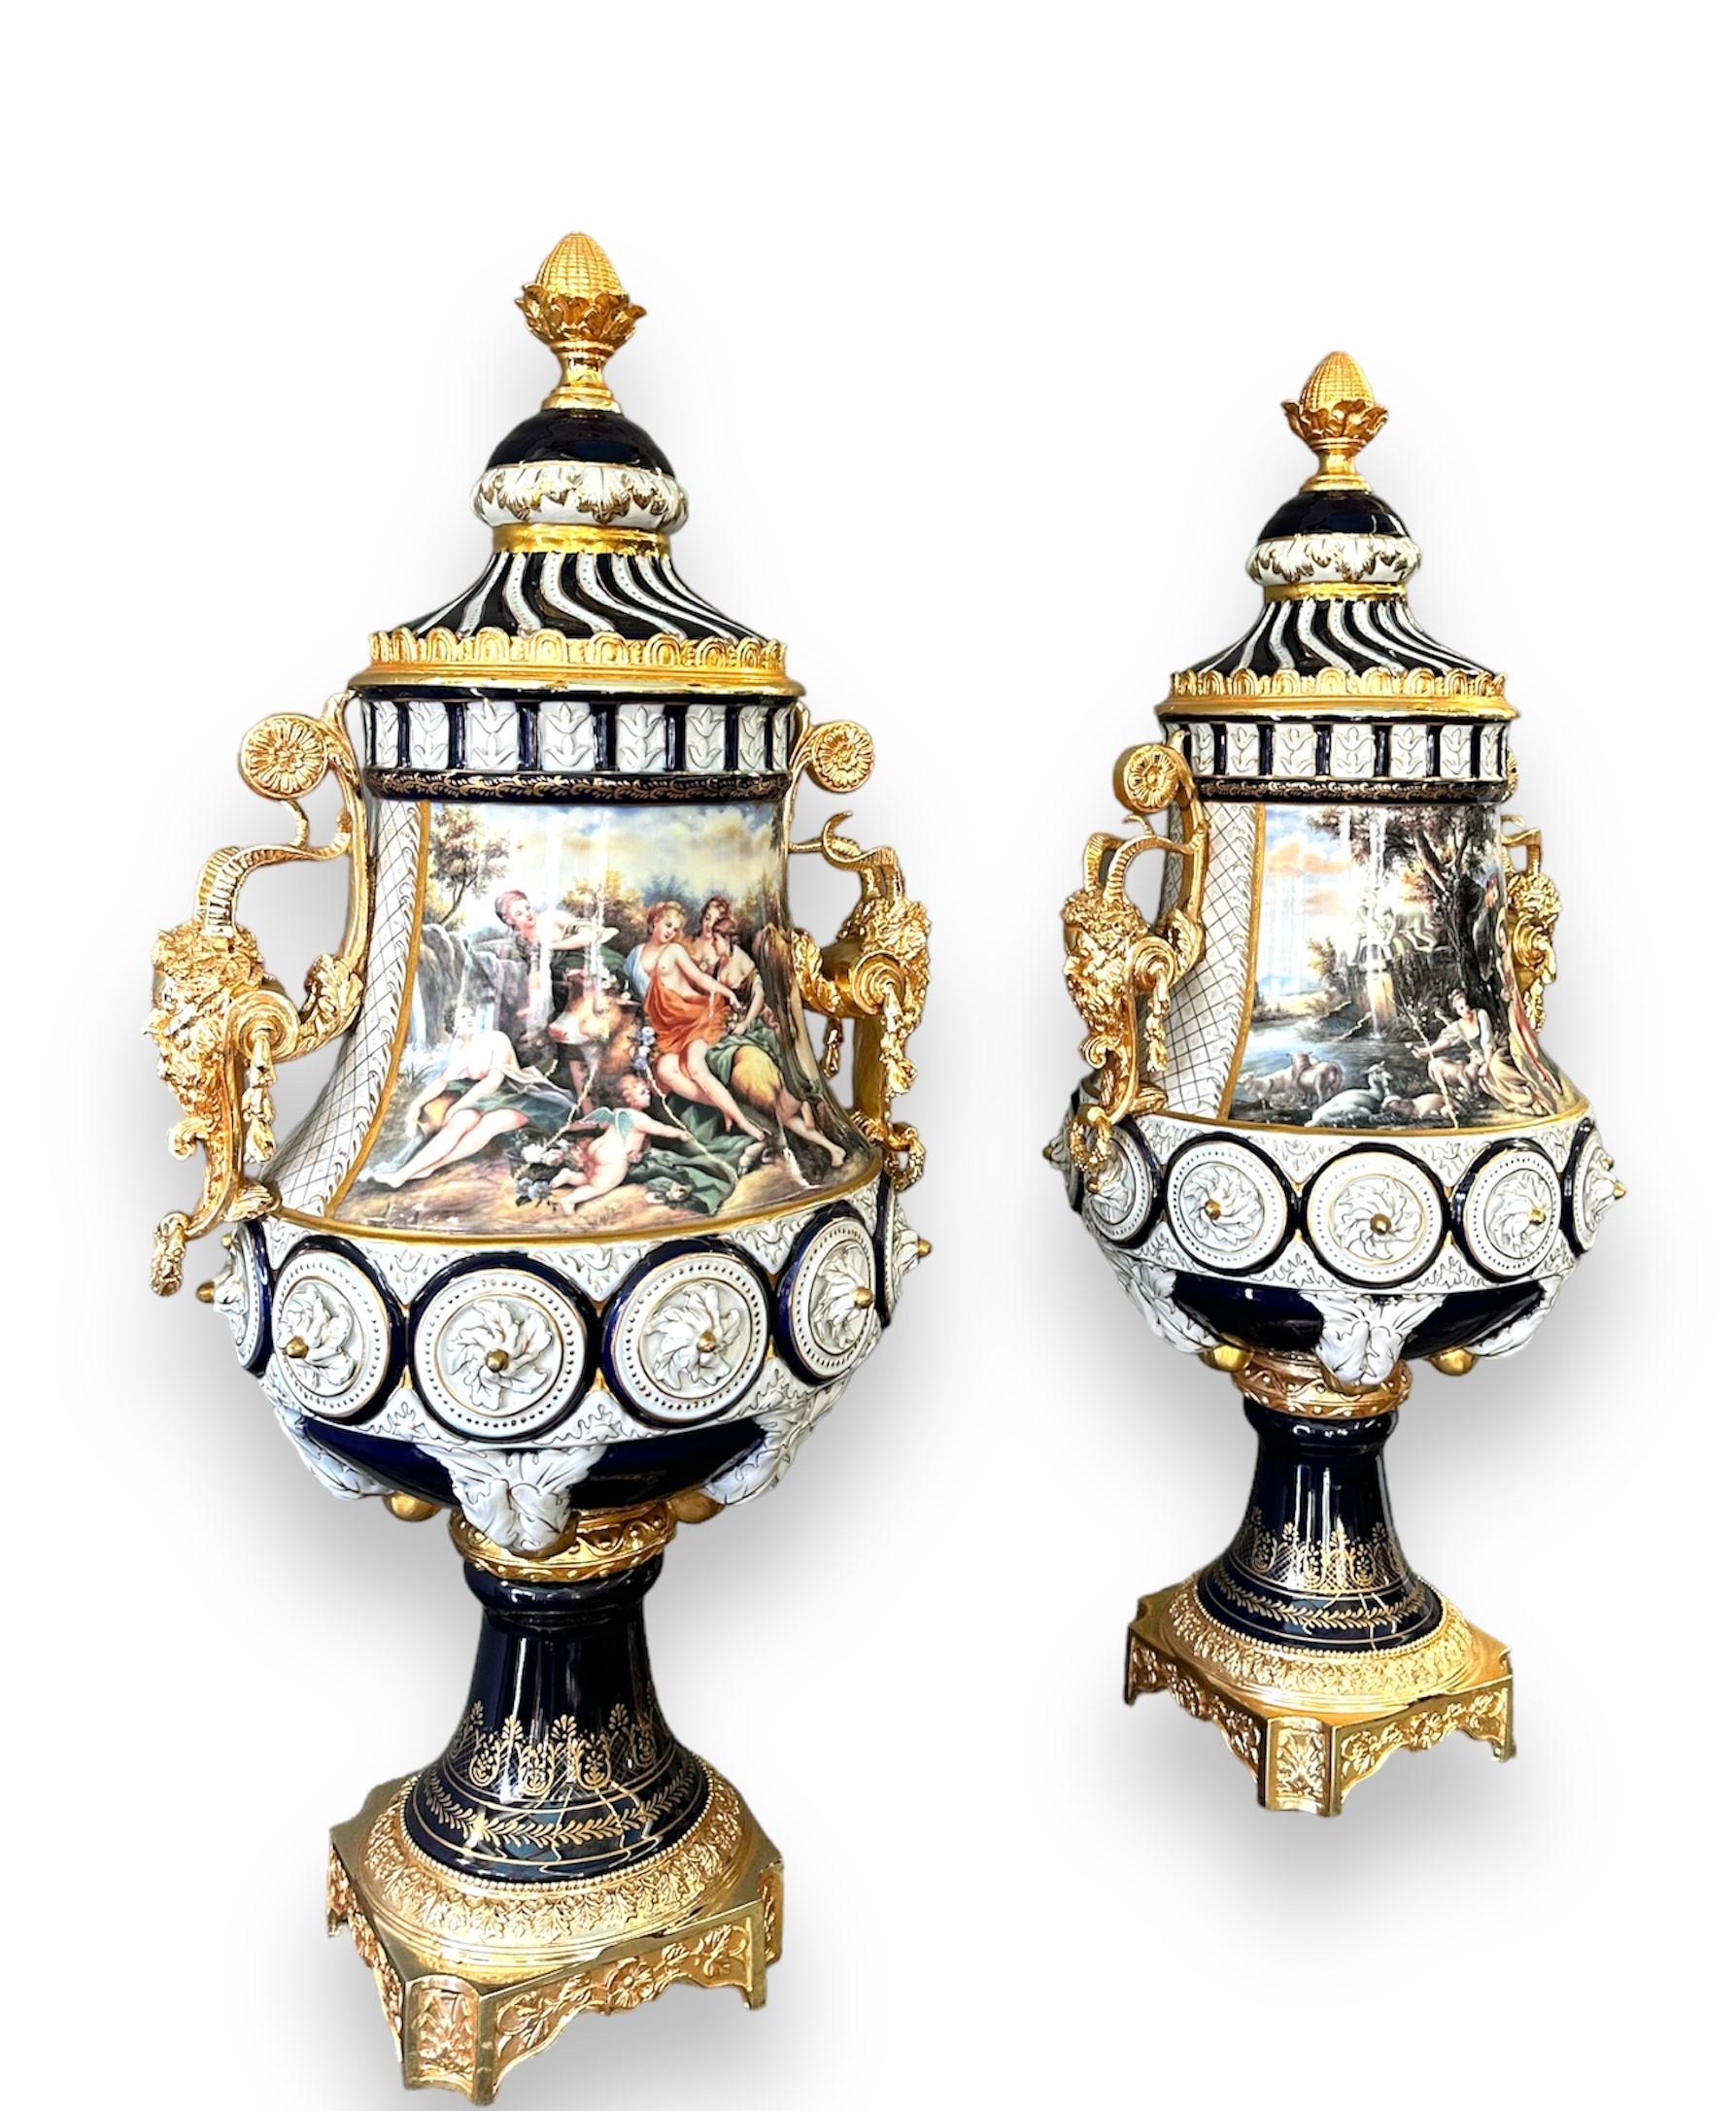 Coppia di vasi in porcellana di Sevres dipinti a mano, con applicazioni in bronzo dorato.

Francia - primi XX secolo

Misure: H 85 x L 38.